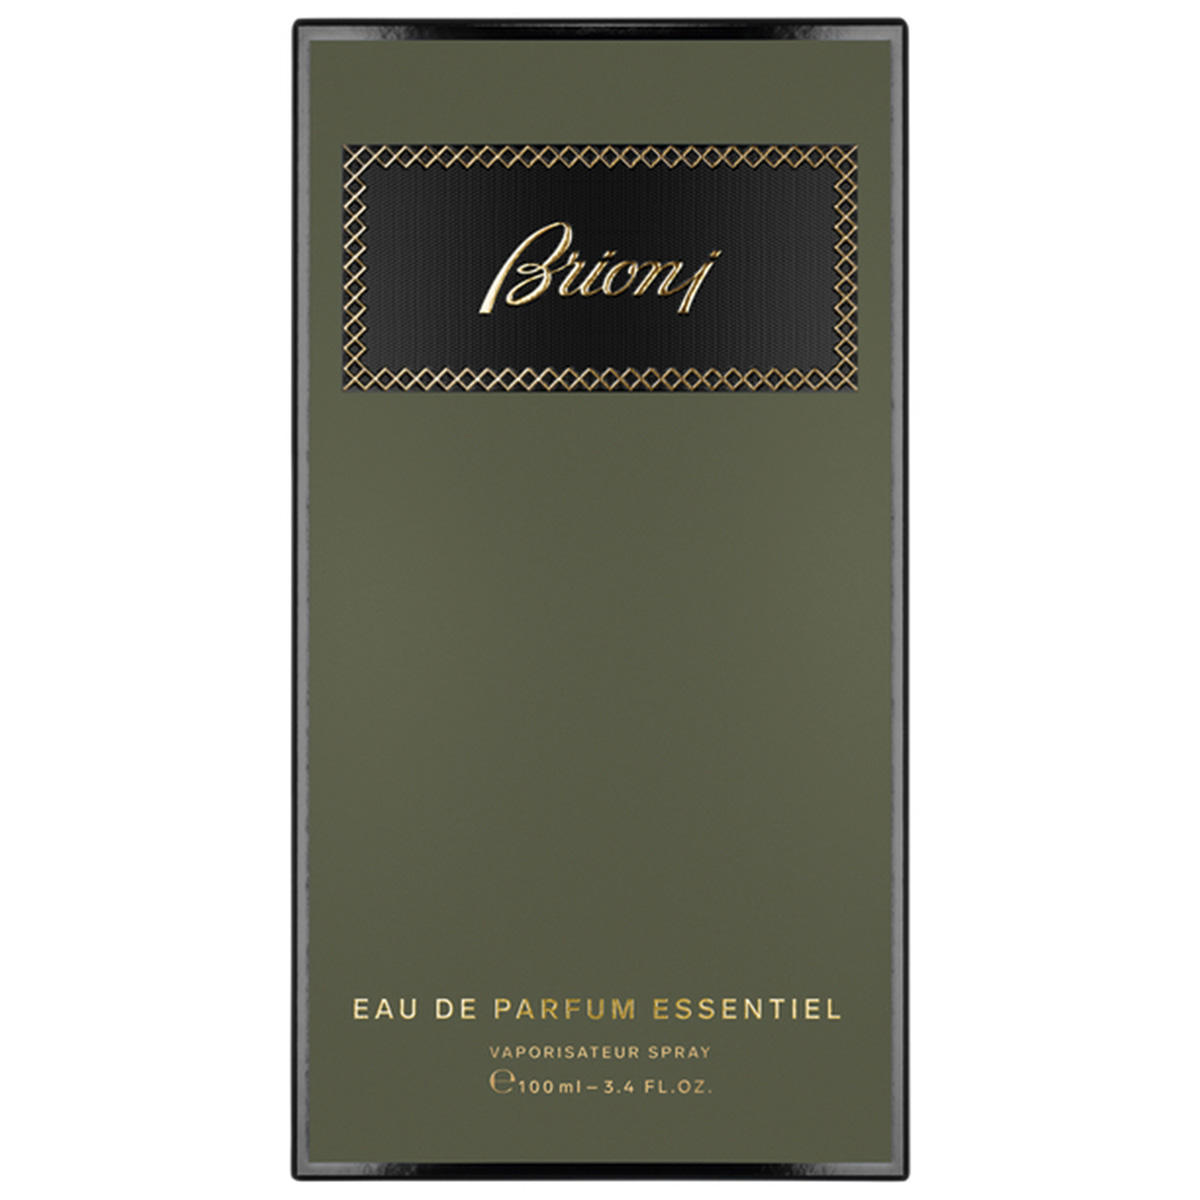 Brioni Eau de Parfum Essentiel 100 ml - 2